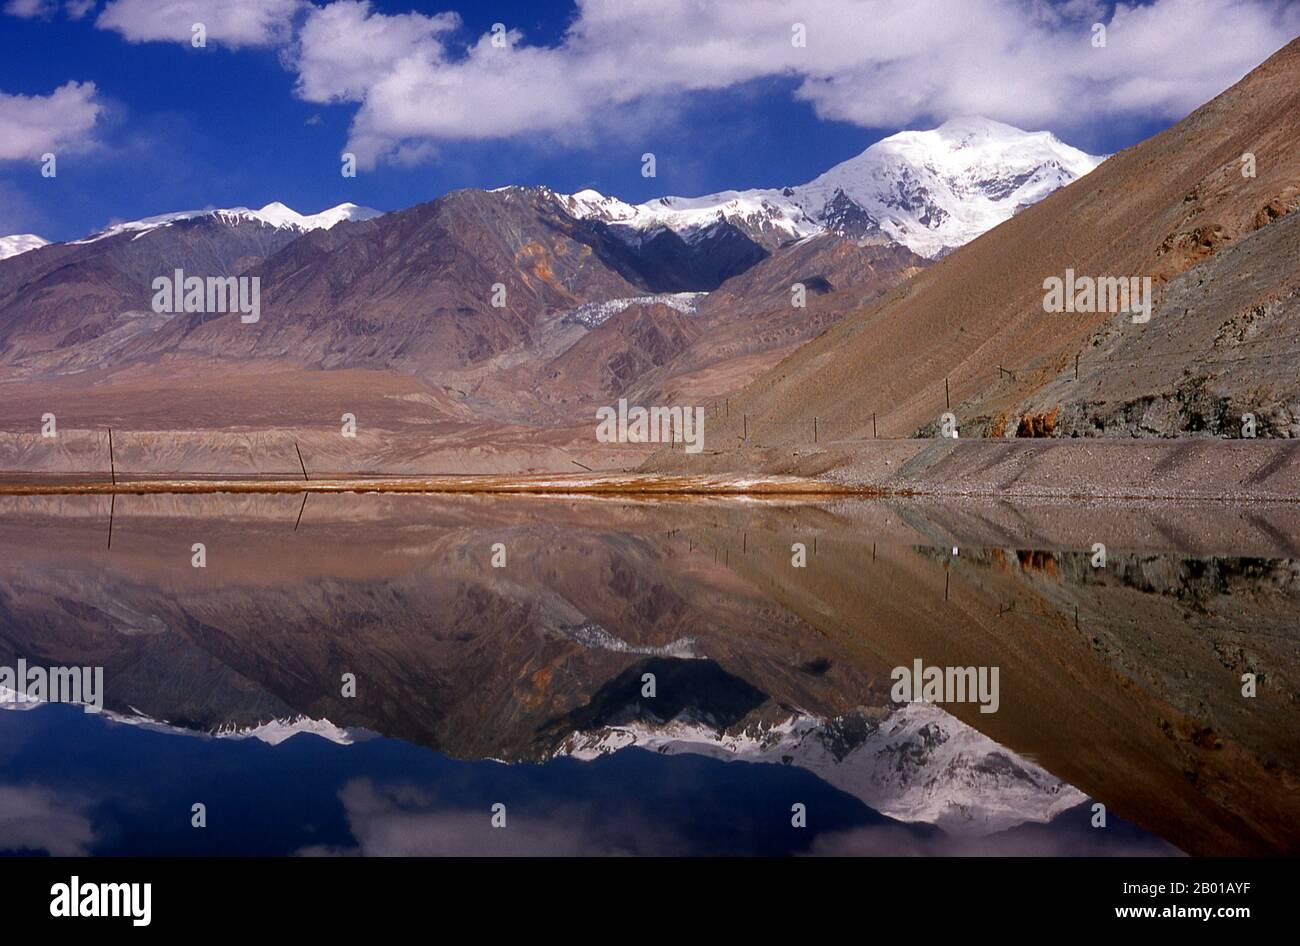 China: Kangxiwa River, Karakoram Highway, Xinjiang. Die Pamir-Berge sind eine Gebirgskette in Zentralasien, die durch die Kreuzung oder den Knoten der Himalaya-, Tian Shan-, Karakoram-, Kunlun- und Hindu-Kush-Gebirge gebildet wird. Sie gehören zu den höchsten Bergen der Welt und sind seit viktorianischer Zeit als „Dach der Welt“ bekannt, eine wahrscheinliche Übersetzung aus dem Persischen. Der Zhongba Gonglu oder Karakoram Highway ist ein Ingenieurswunder, das 1986 eröffnet wurde und die höchste asphaltierte Straße der Welt bleibt. Sie verbindet China und Pakistan über das Karakorum-Gebirge. Stockfoto